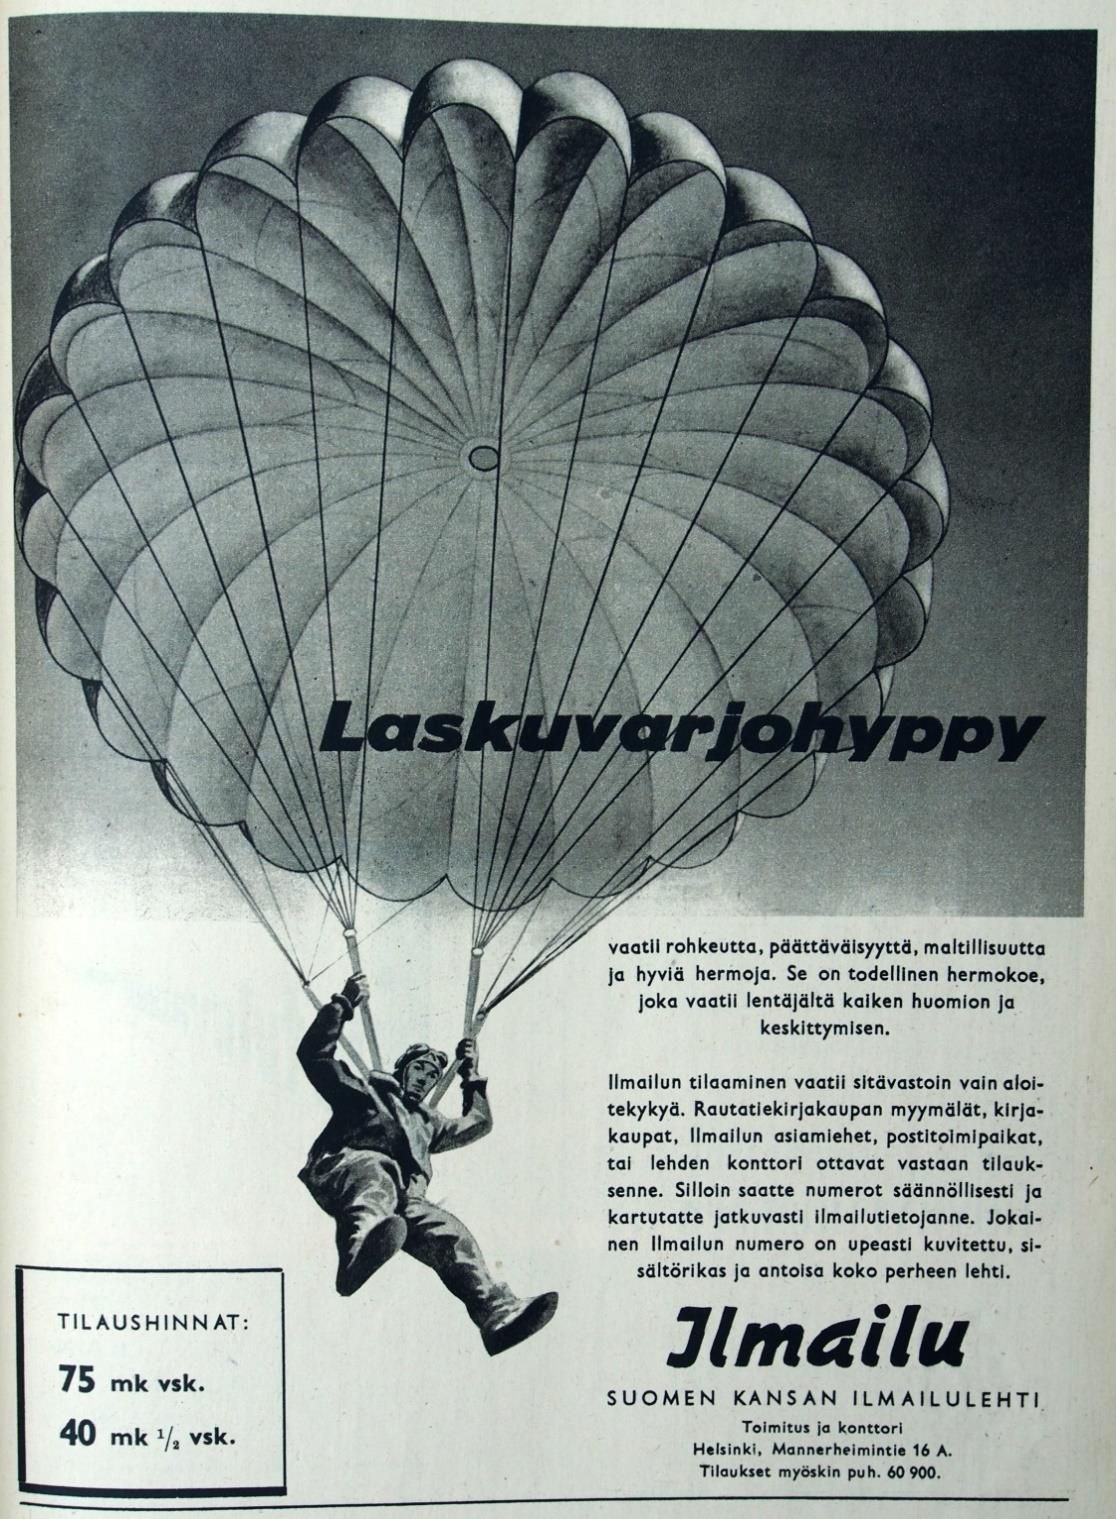 Suomen Ilmailuliitto alkaa julkaista Ilmailua Suomen Ilmapuolustusliitto oli julkaissut Ilmailu-lehteä myös nimellä Ilmailu Siivet vuodesta 1937 alkaen.